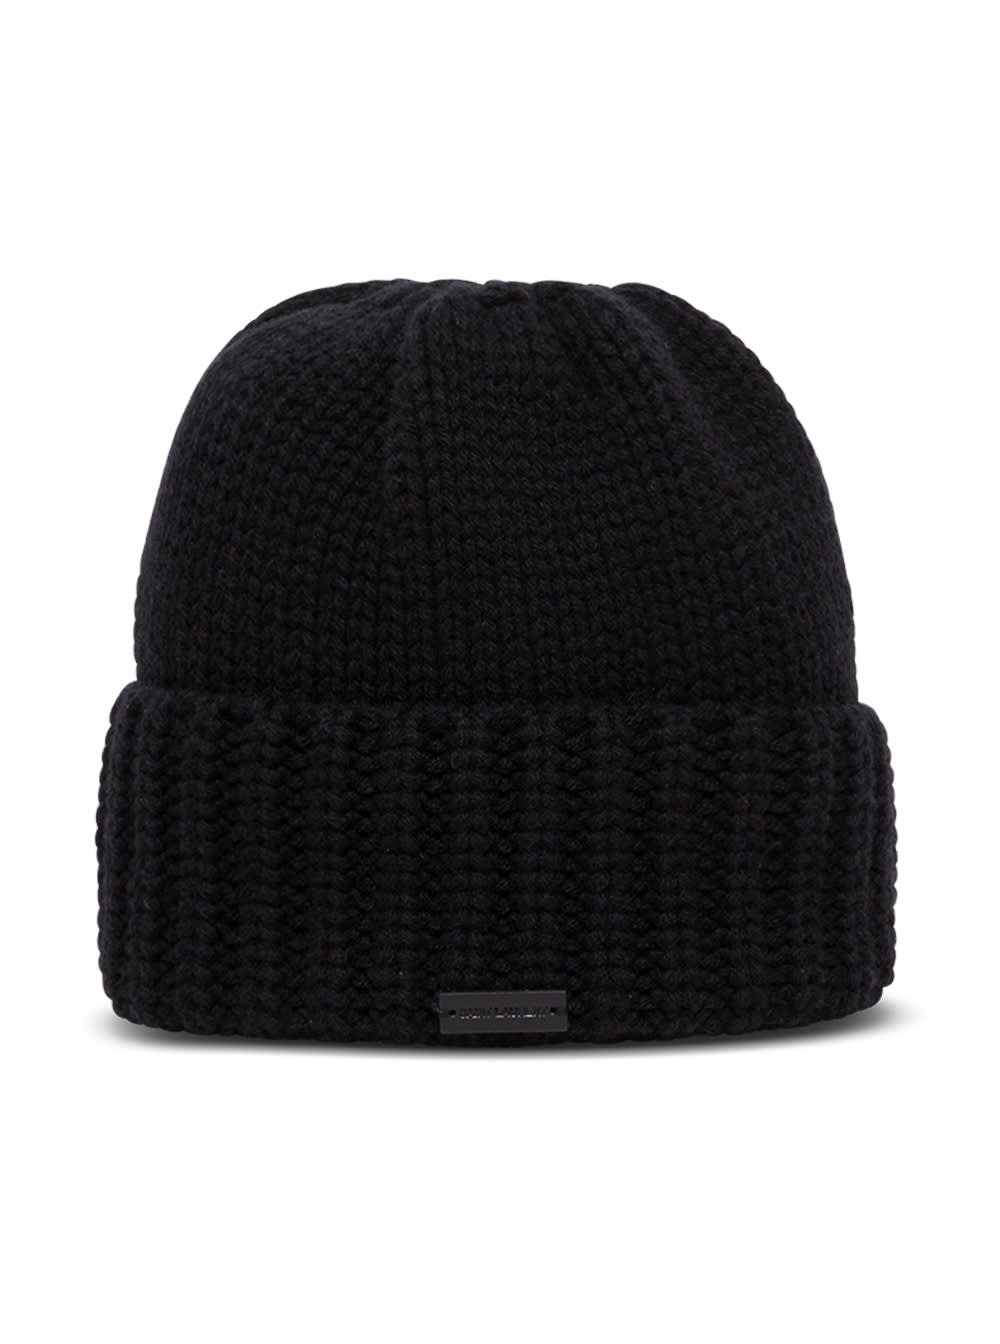 Saint Laurent Black Cashmere Hat With Logo